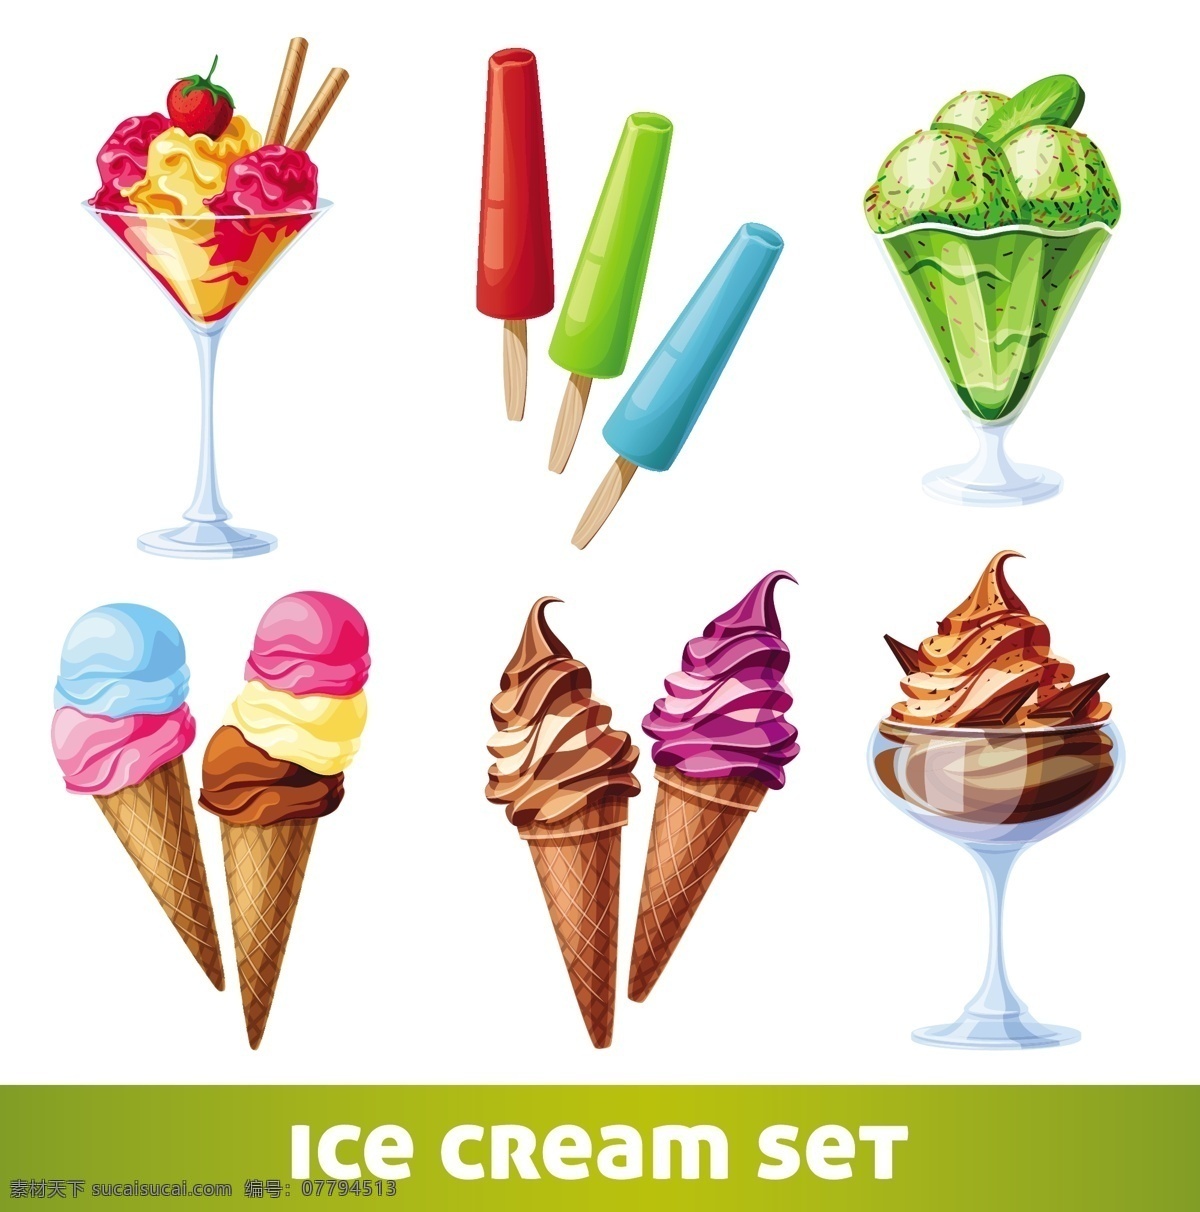 冰淇淋雪糕 冰淇淋 冰激凌 雪糕 冰糕 夏日 清爽 美食 美味 零食 餐饮美食 生活百科 矢量素材 白色